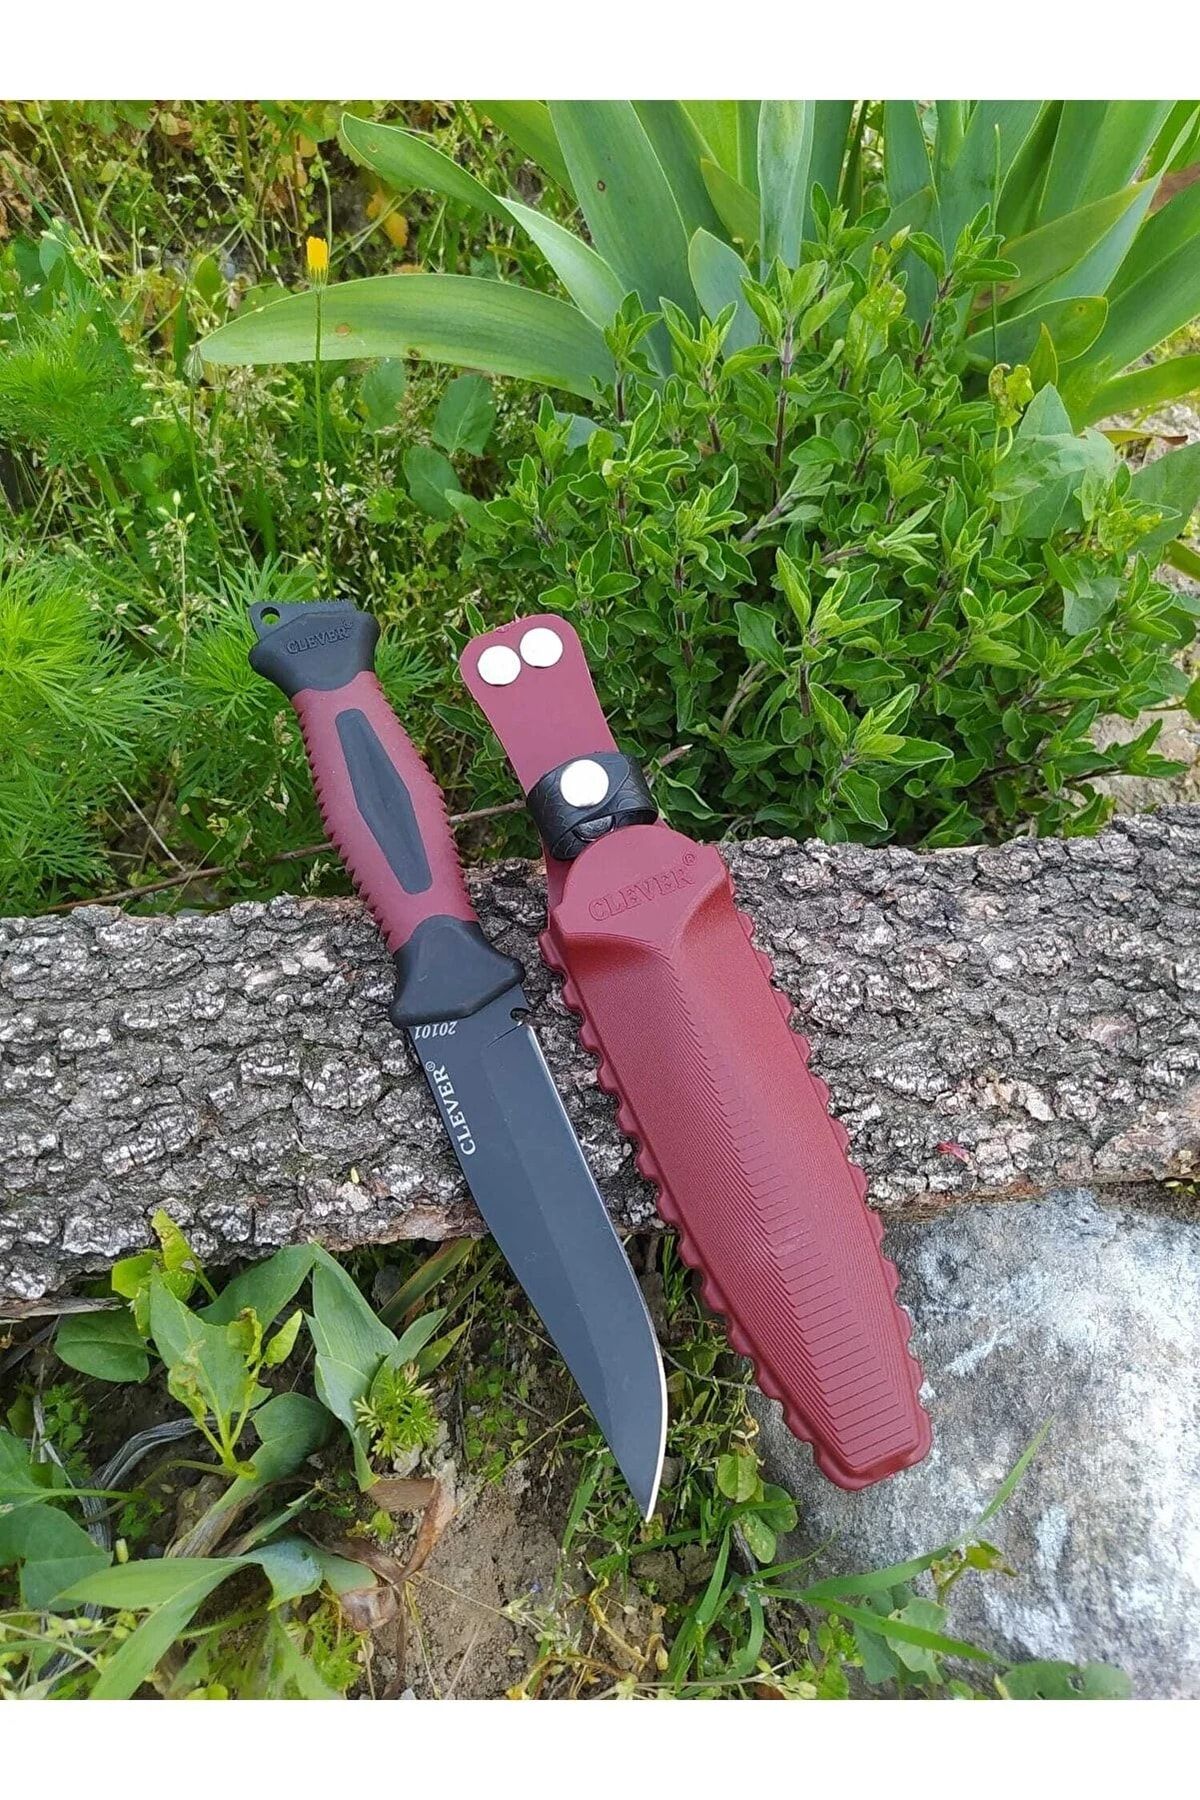 İNDİRİM CENTER Clever Kırmızı Paslanmaz Çelik Avcı Bıçağı Outdoor Kamp Bıçağı Süper Kalite